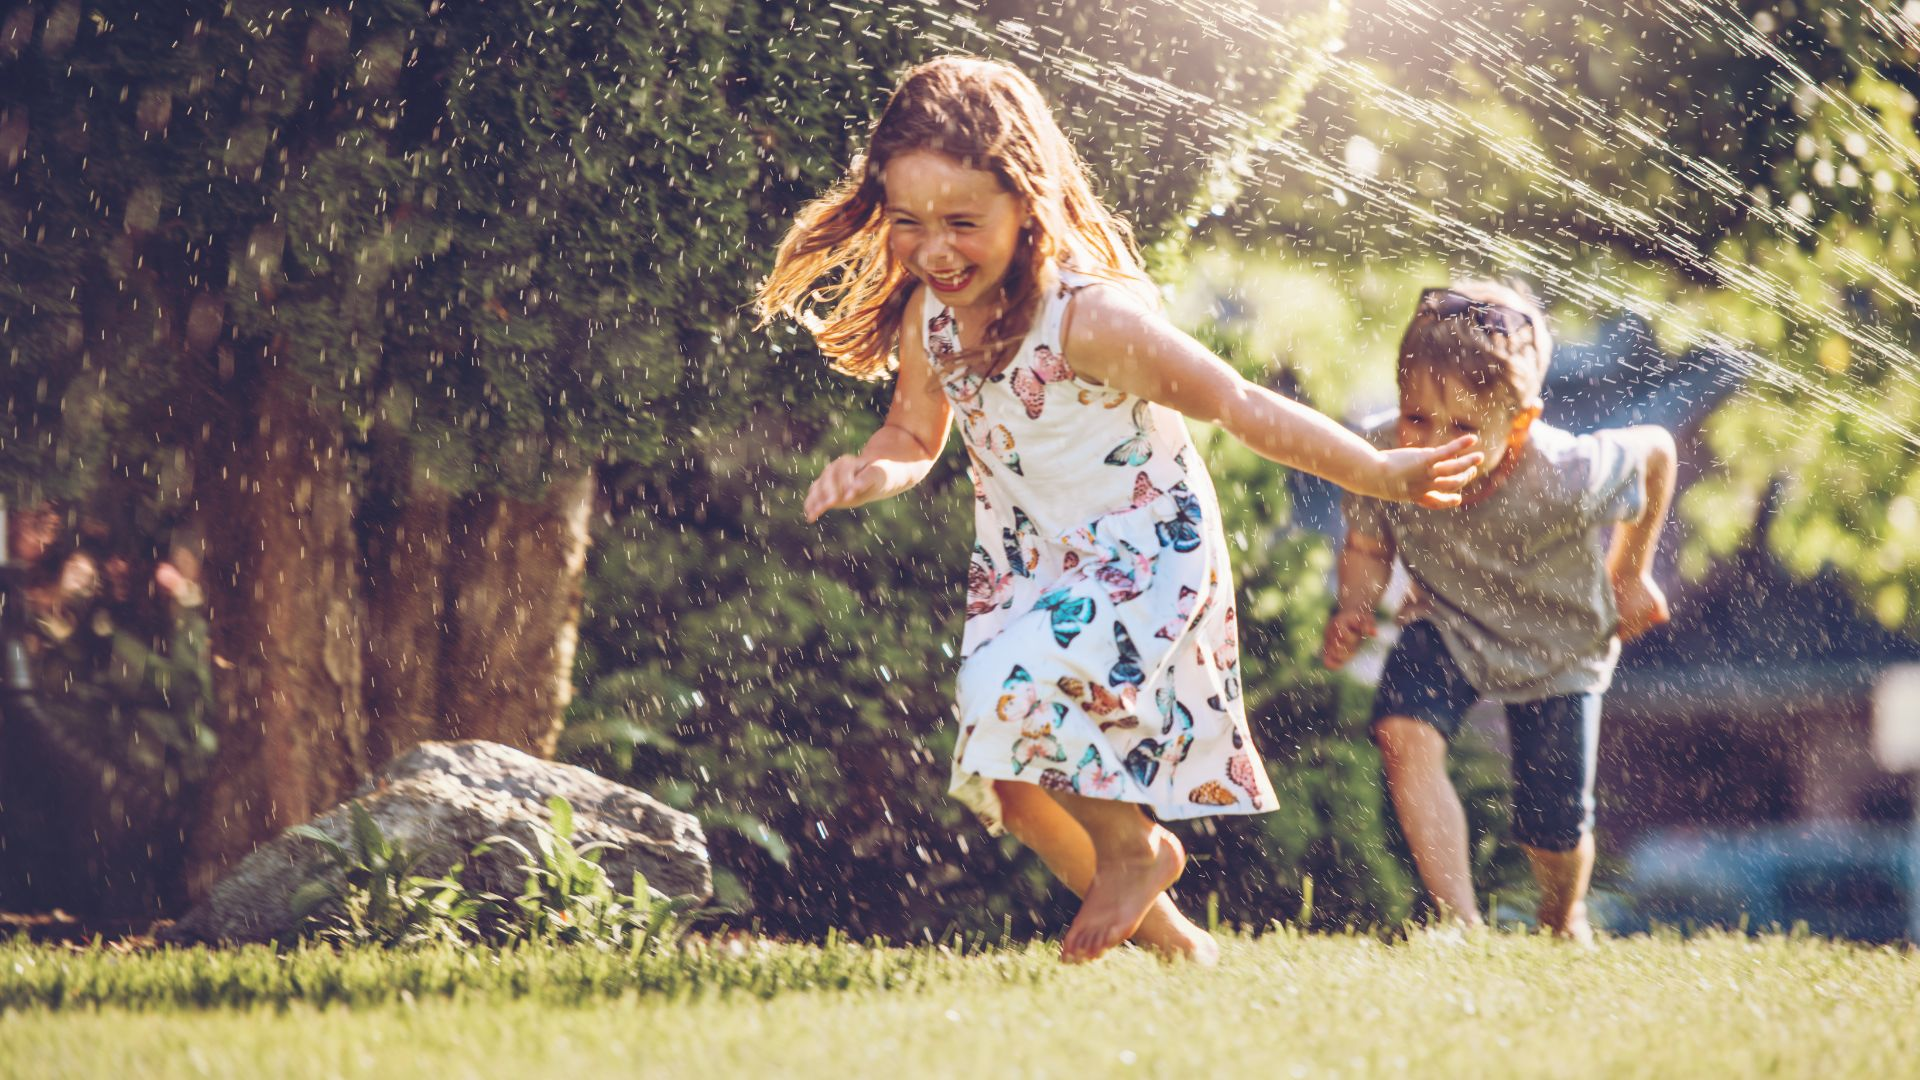 Kids running in Sprinklers